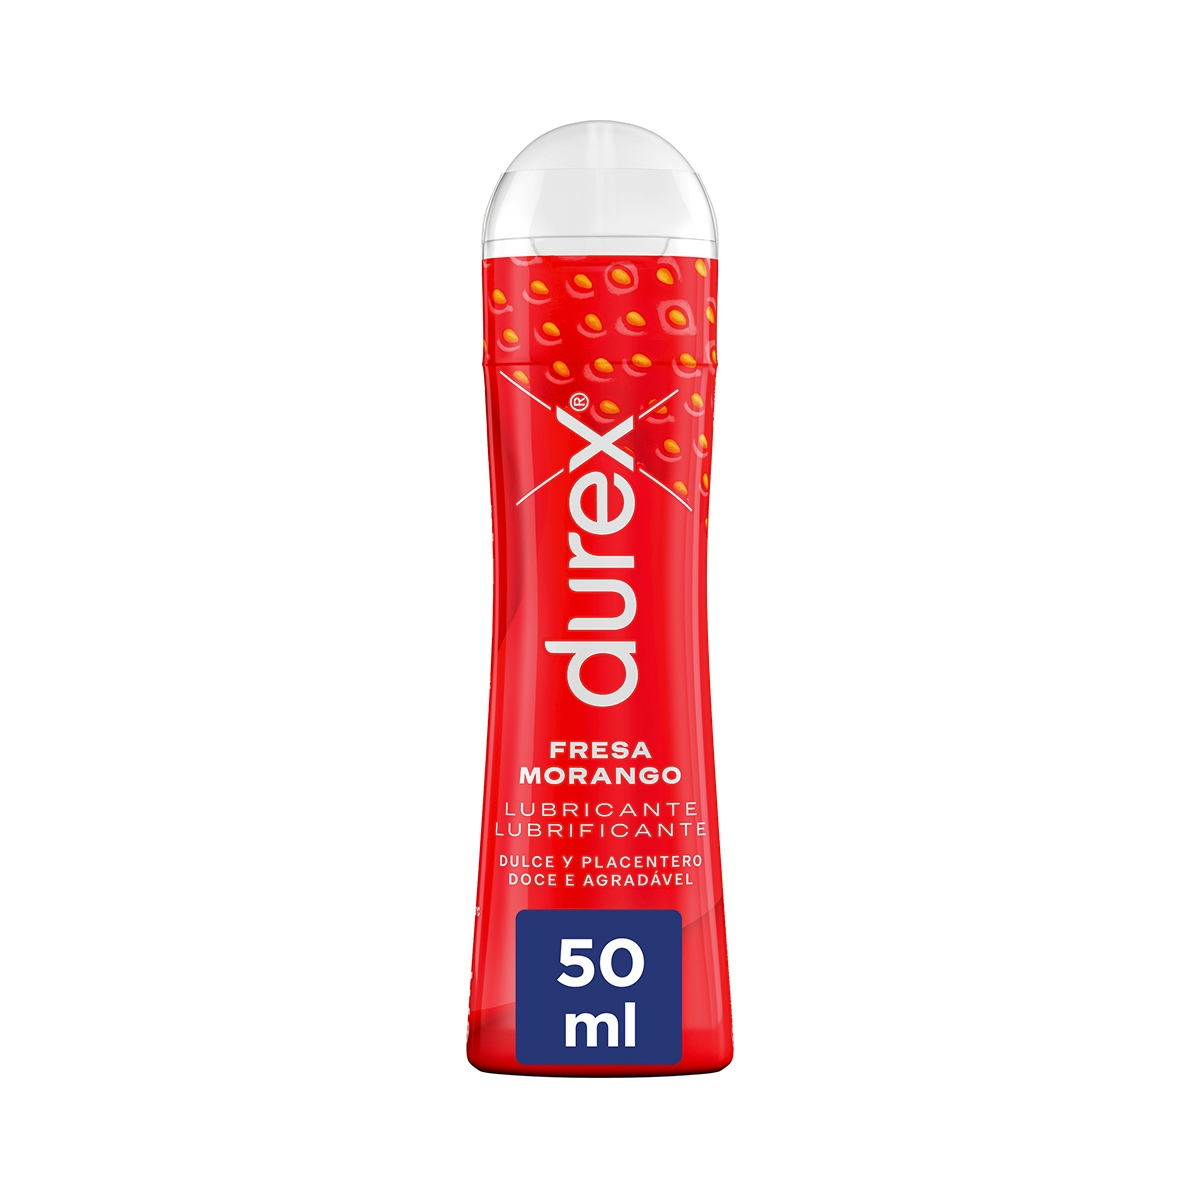 Lubricante íntimo DUREX fresa gel bote 50 ml